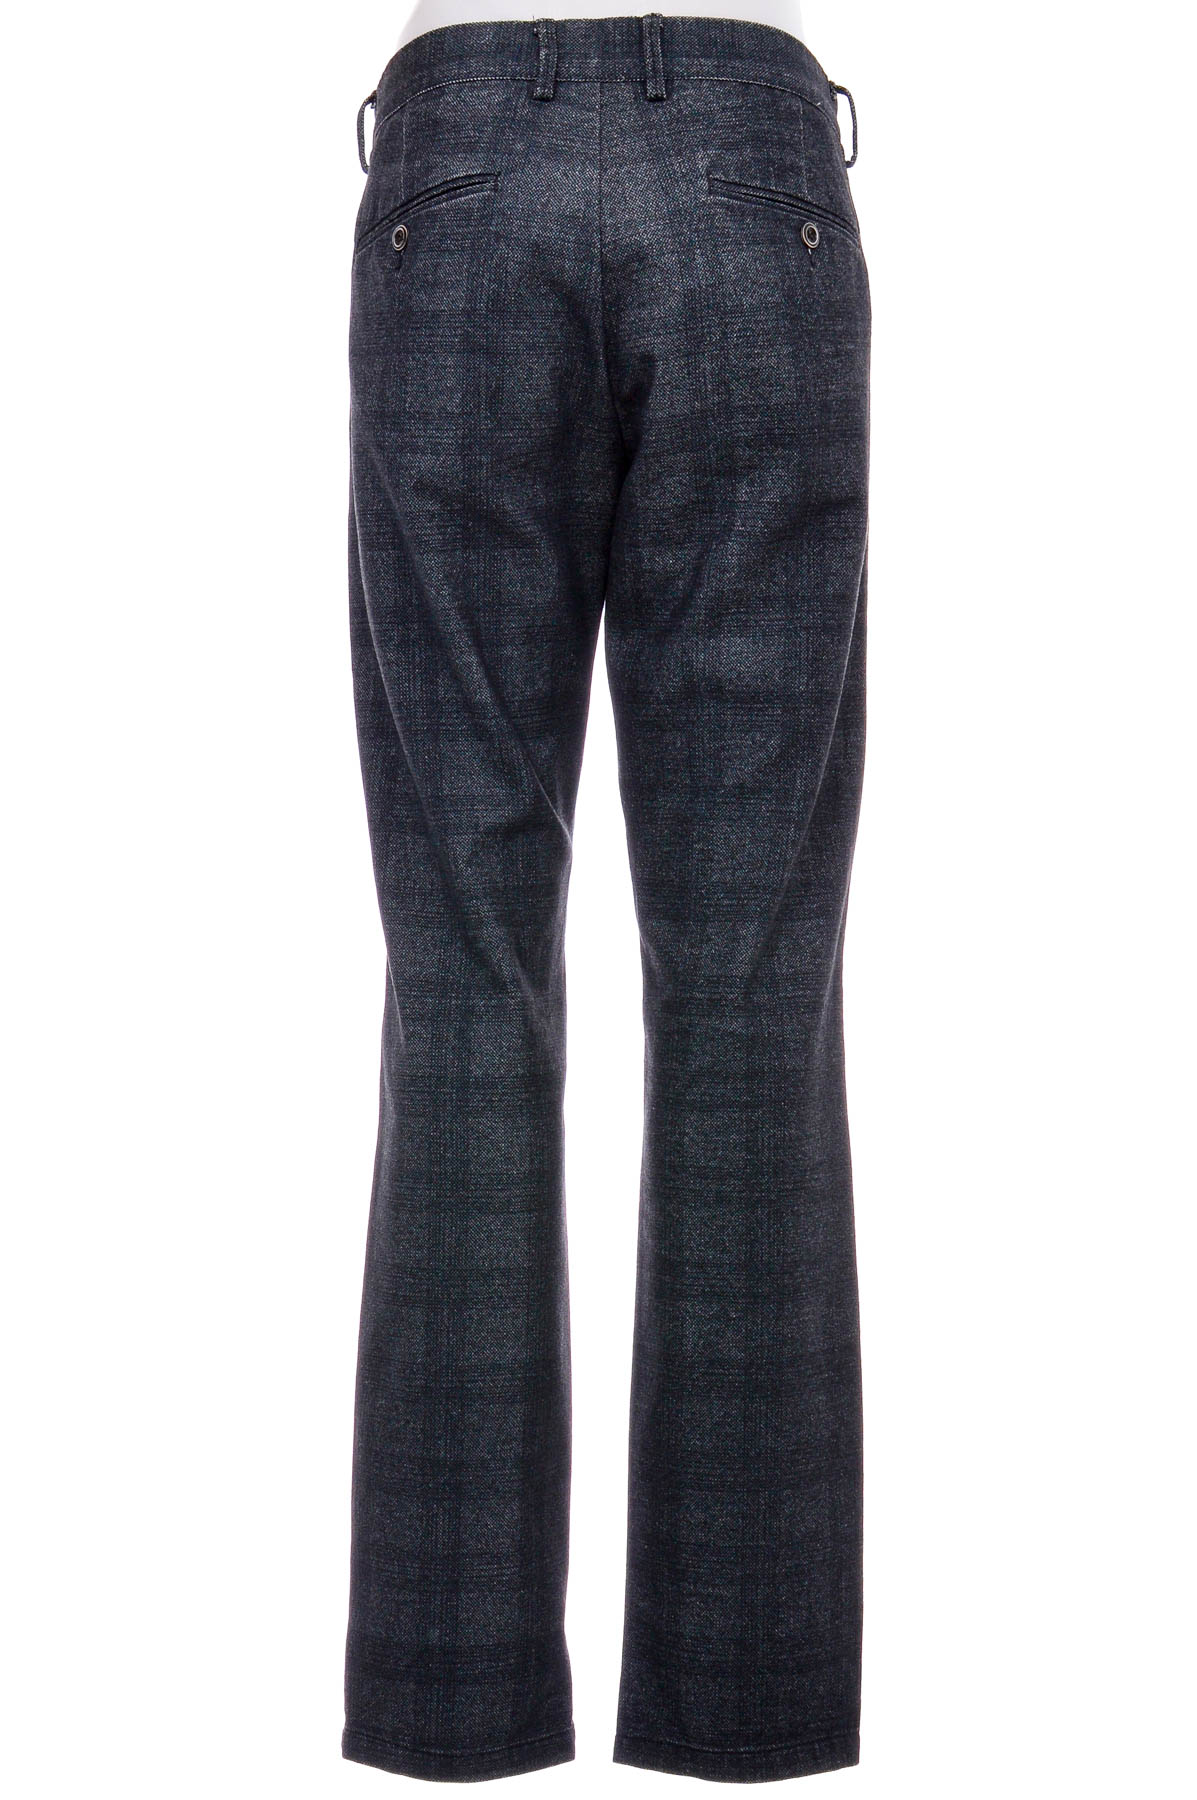 Ανδρικά παντελόνια - DEVRED 1902 - 1